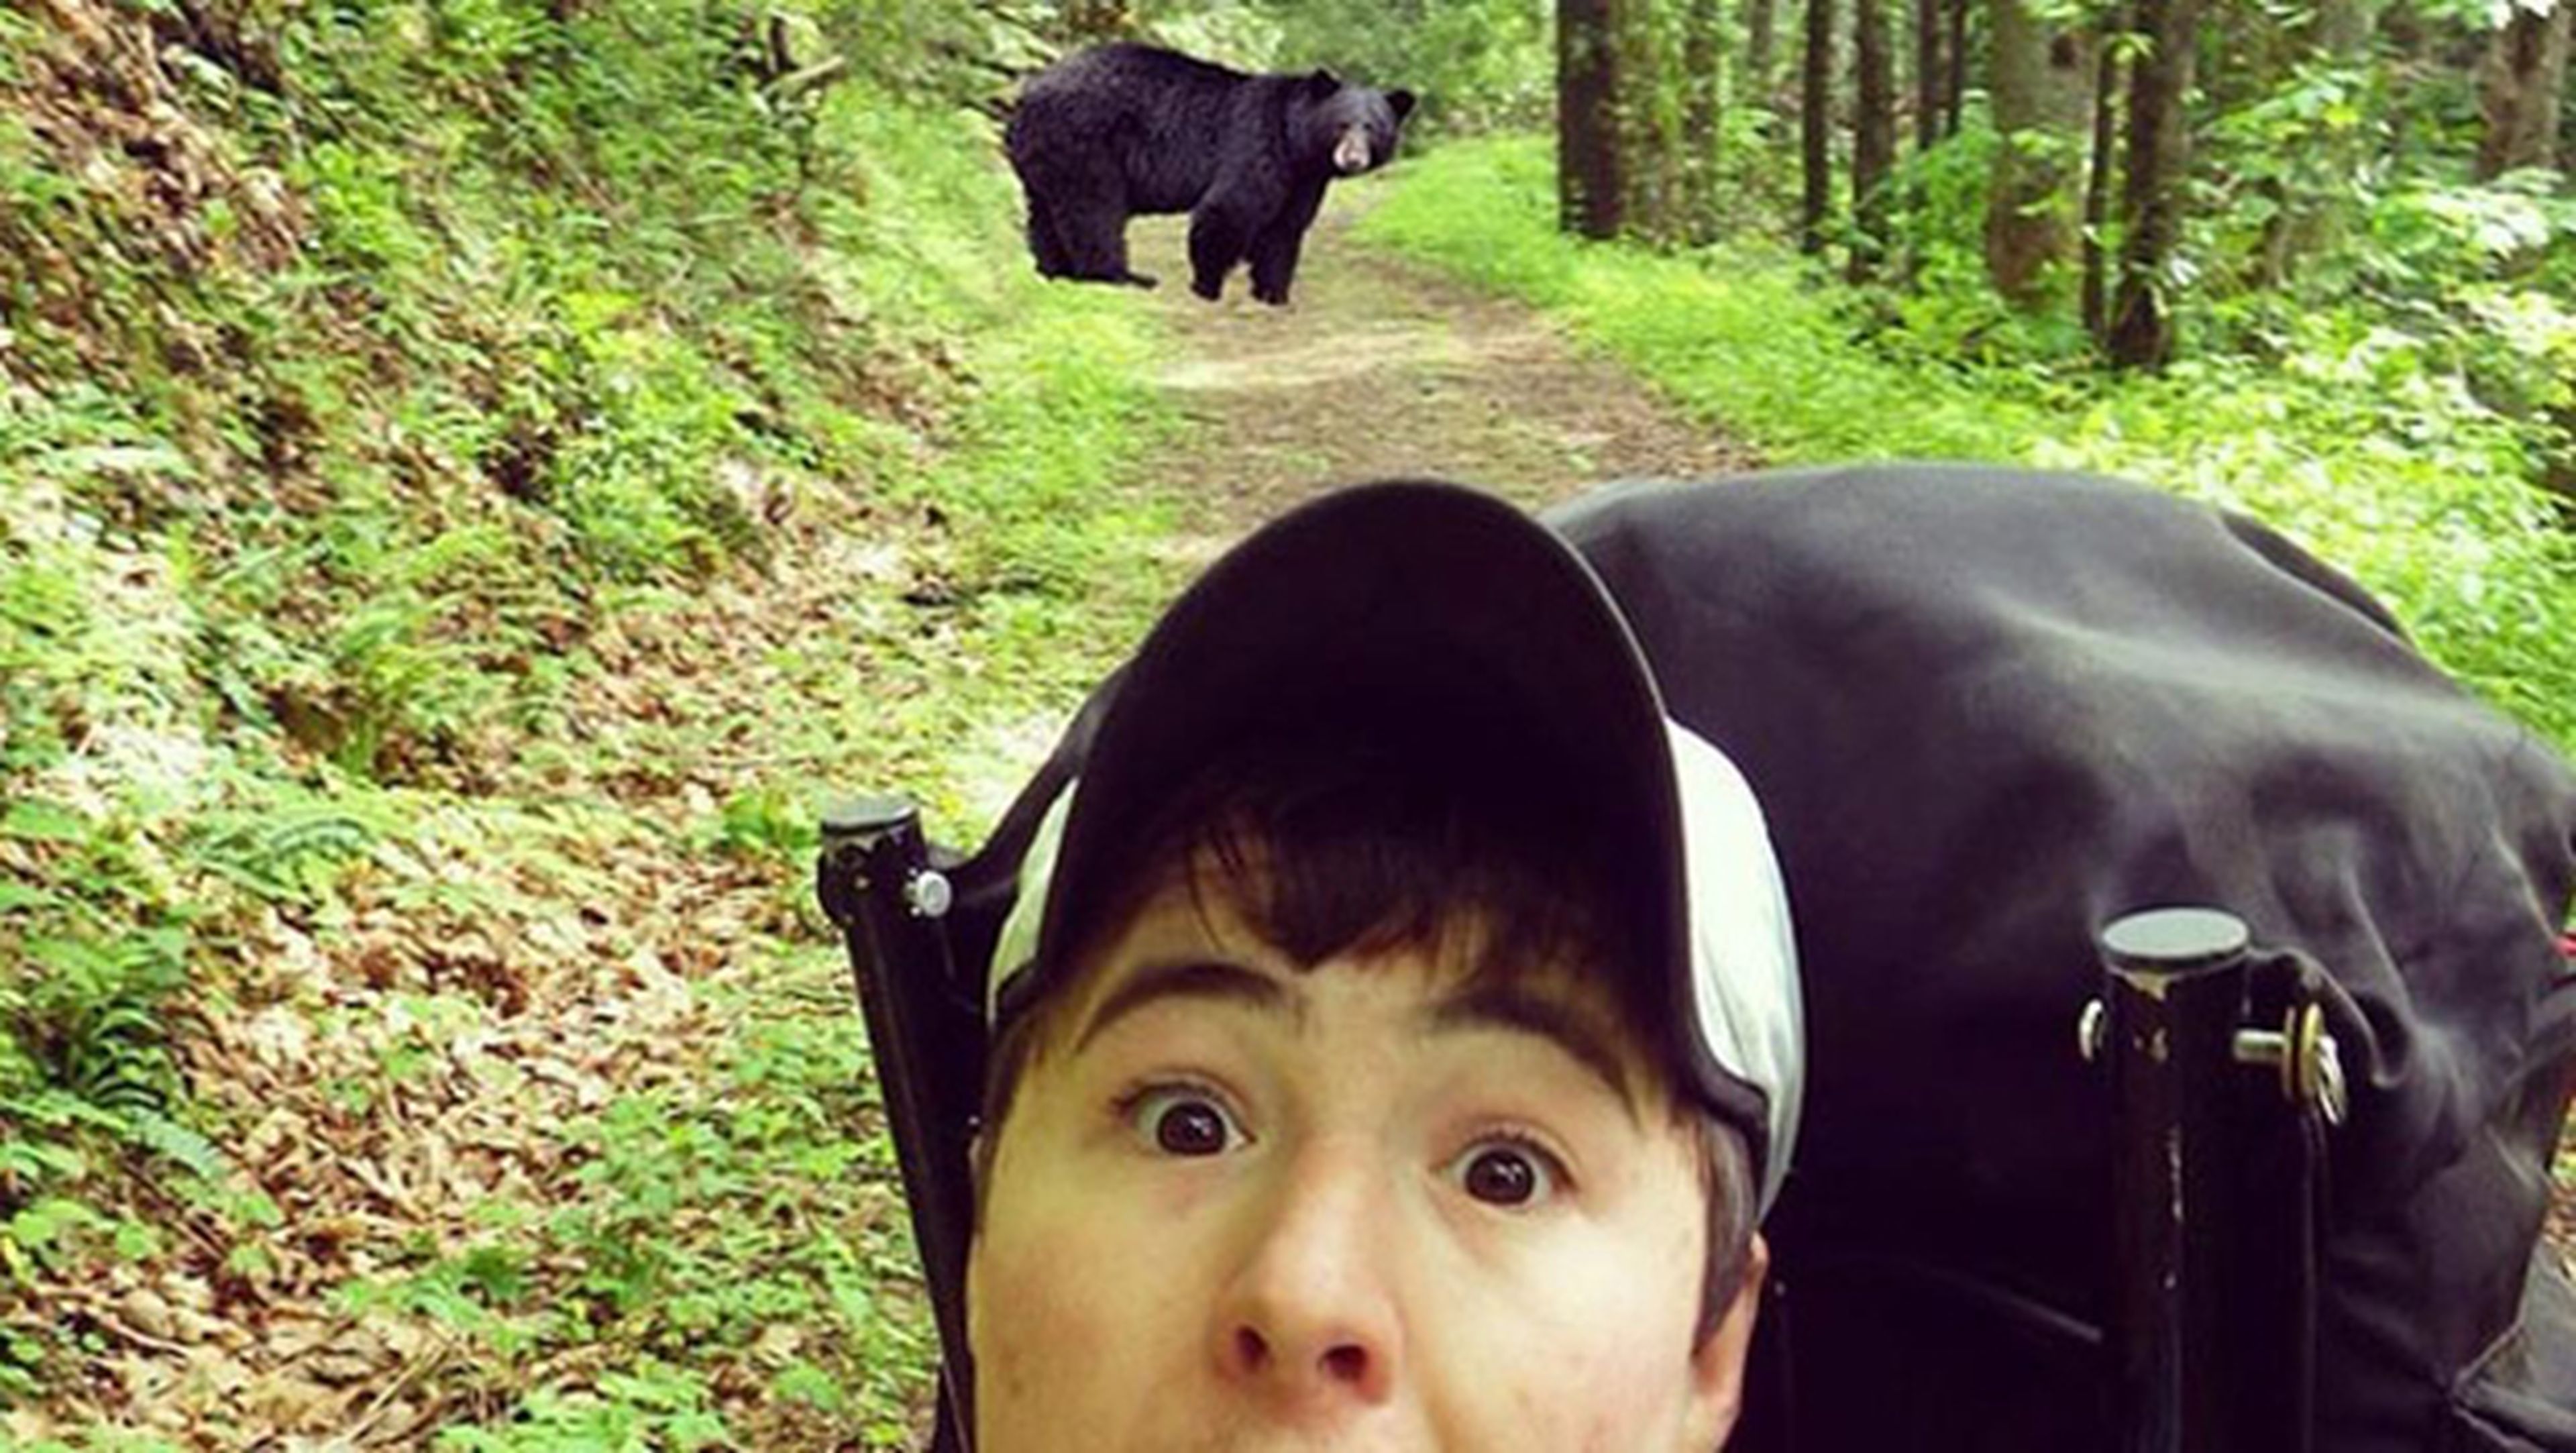 La moda de hacerse selfies con osos obliga a cerrar un parque